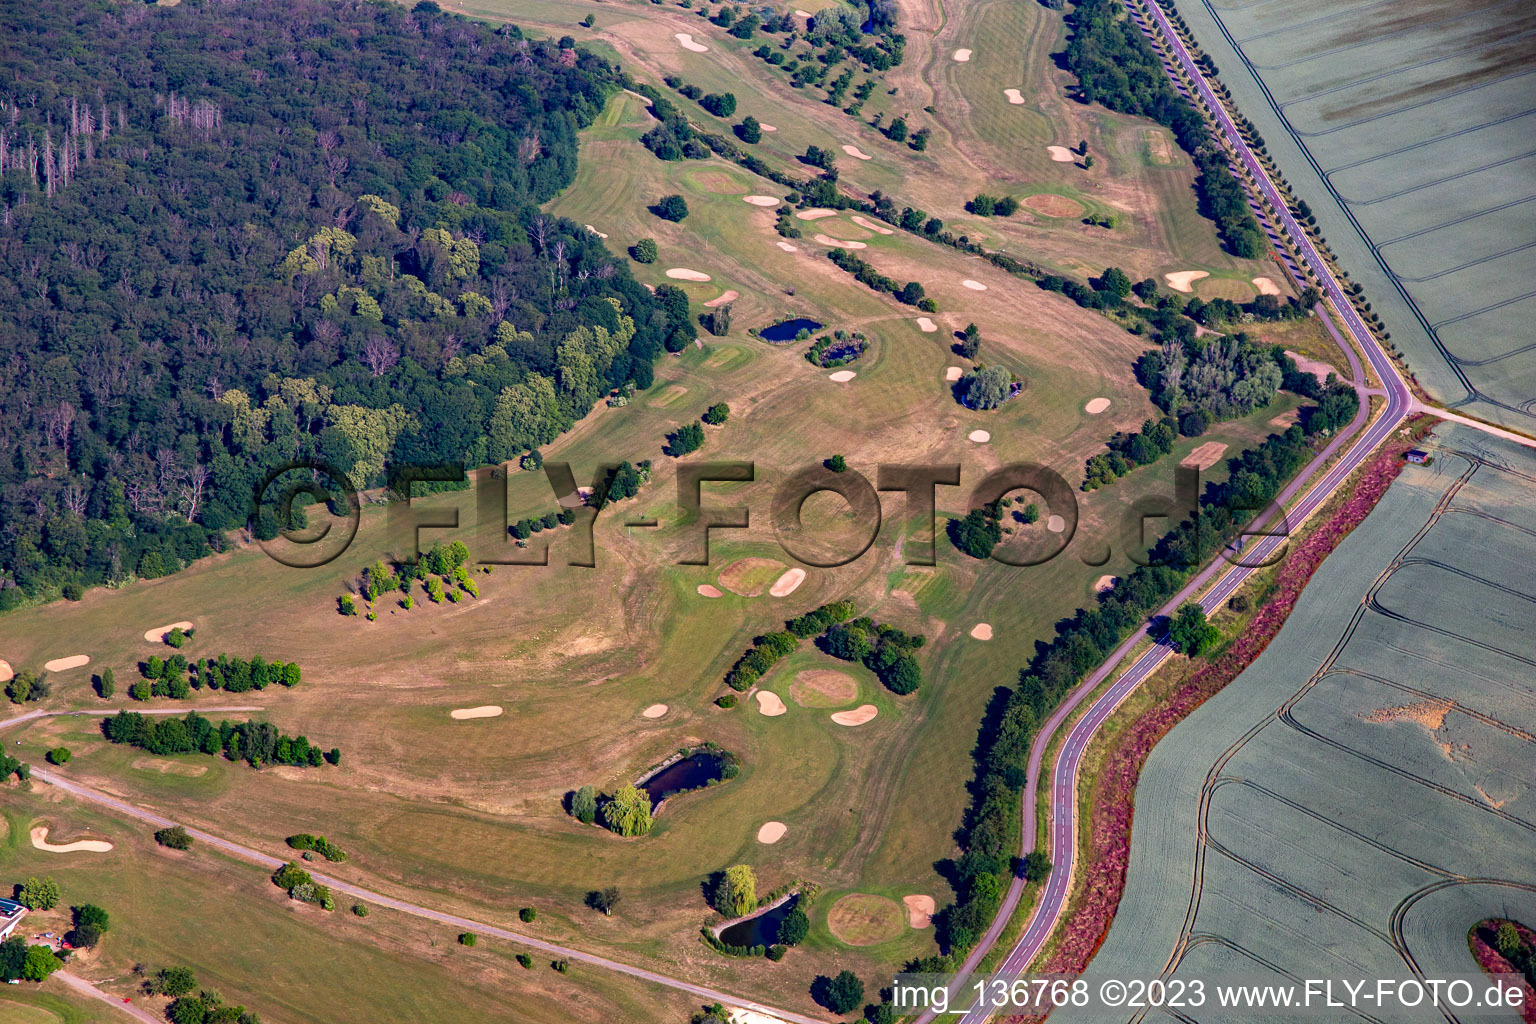 Oblique view of Golf Club Schloß Meisdorf eV in the district Meisdorf in Falkenstein in the state Saxony-Anhalt, Germany